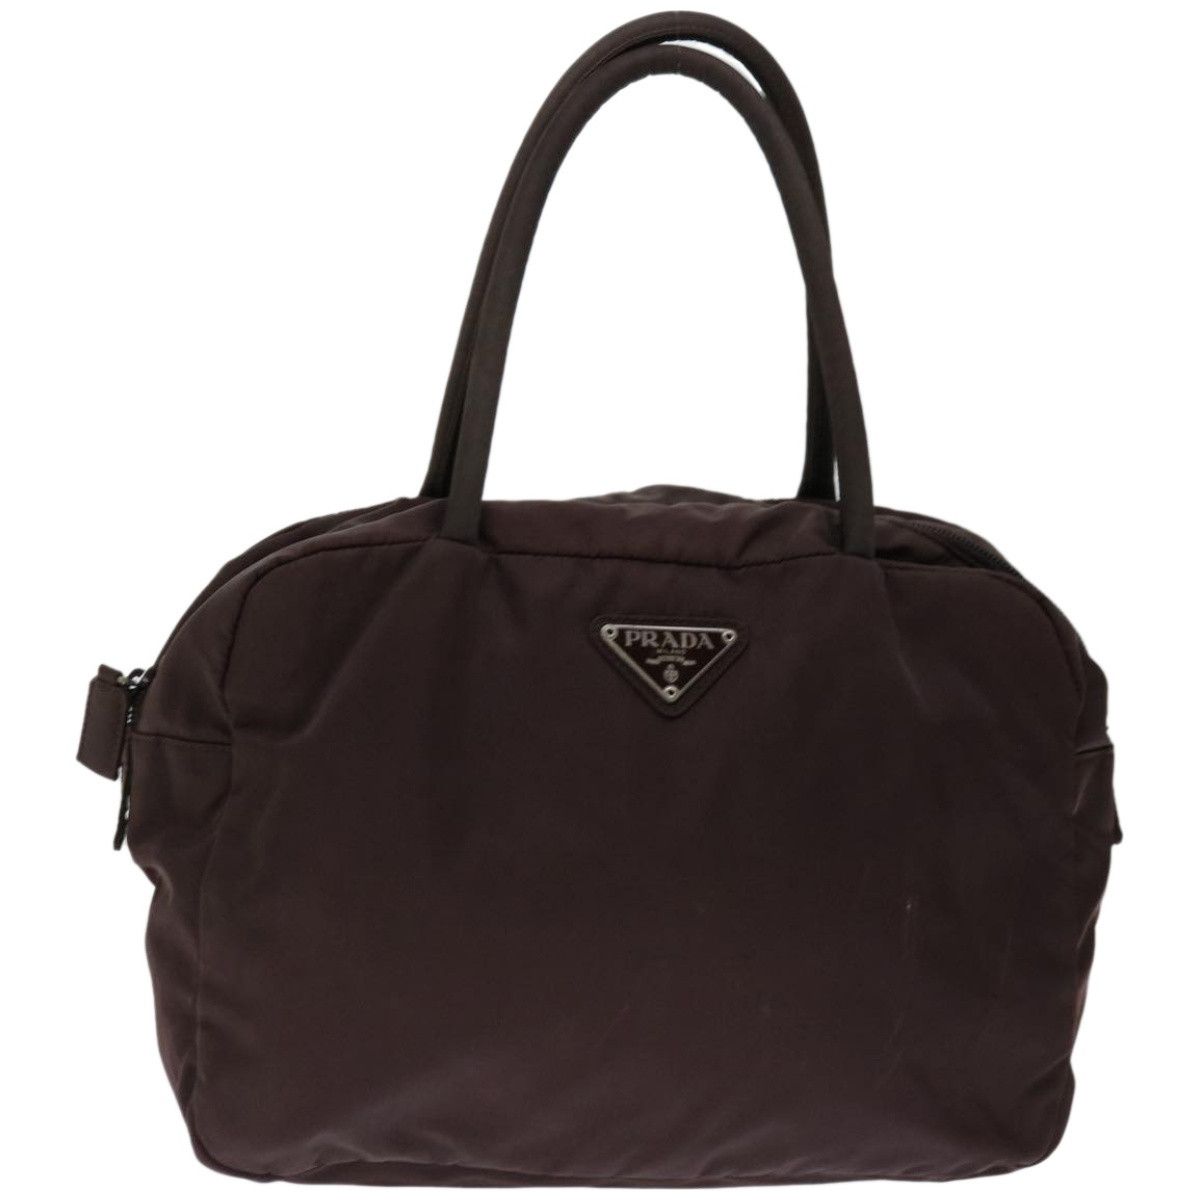 Prada Prada Tessuto handbag Size ONE SIZE - 1 Preview